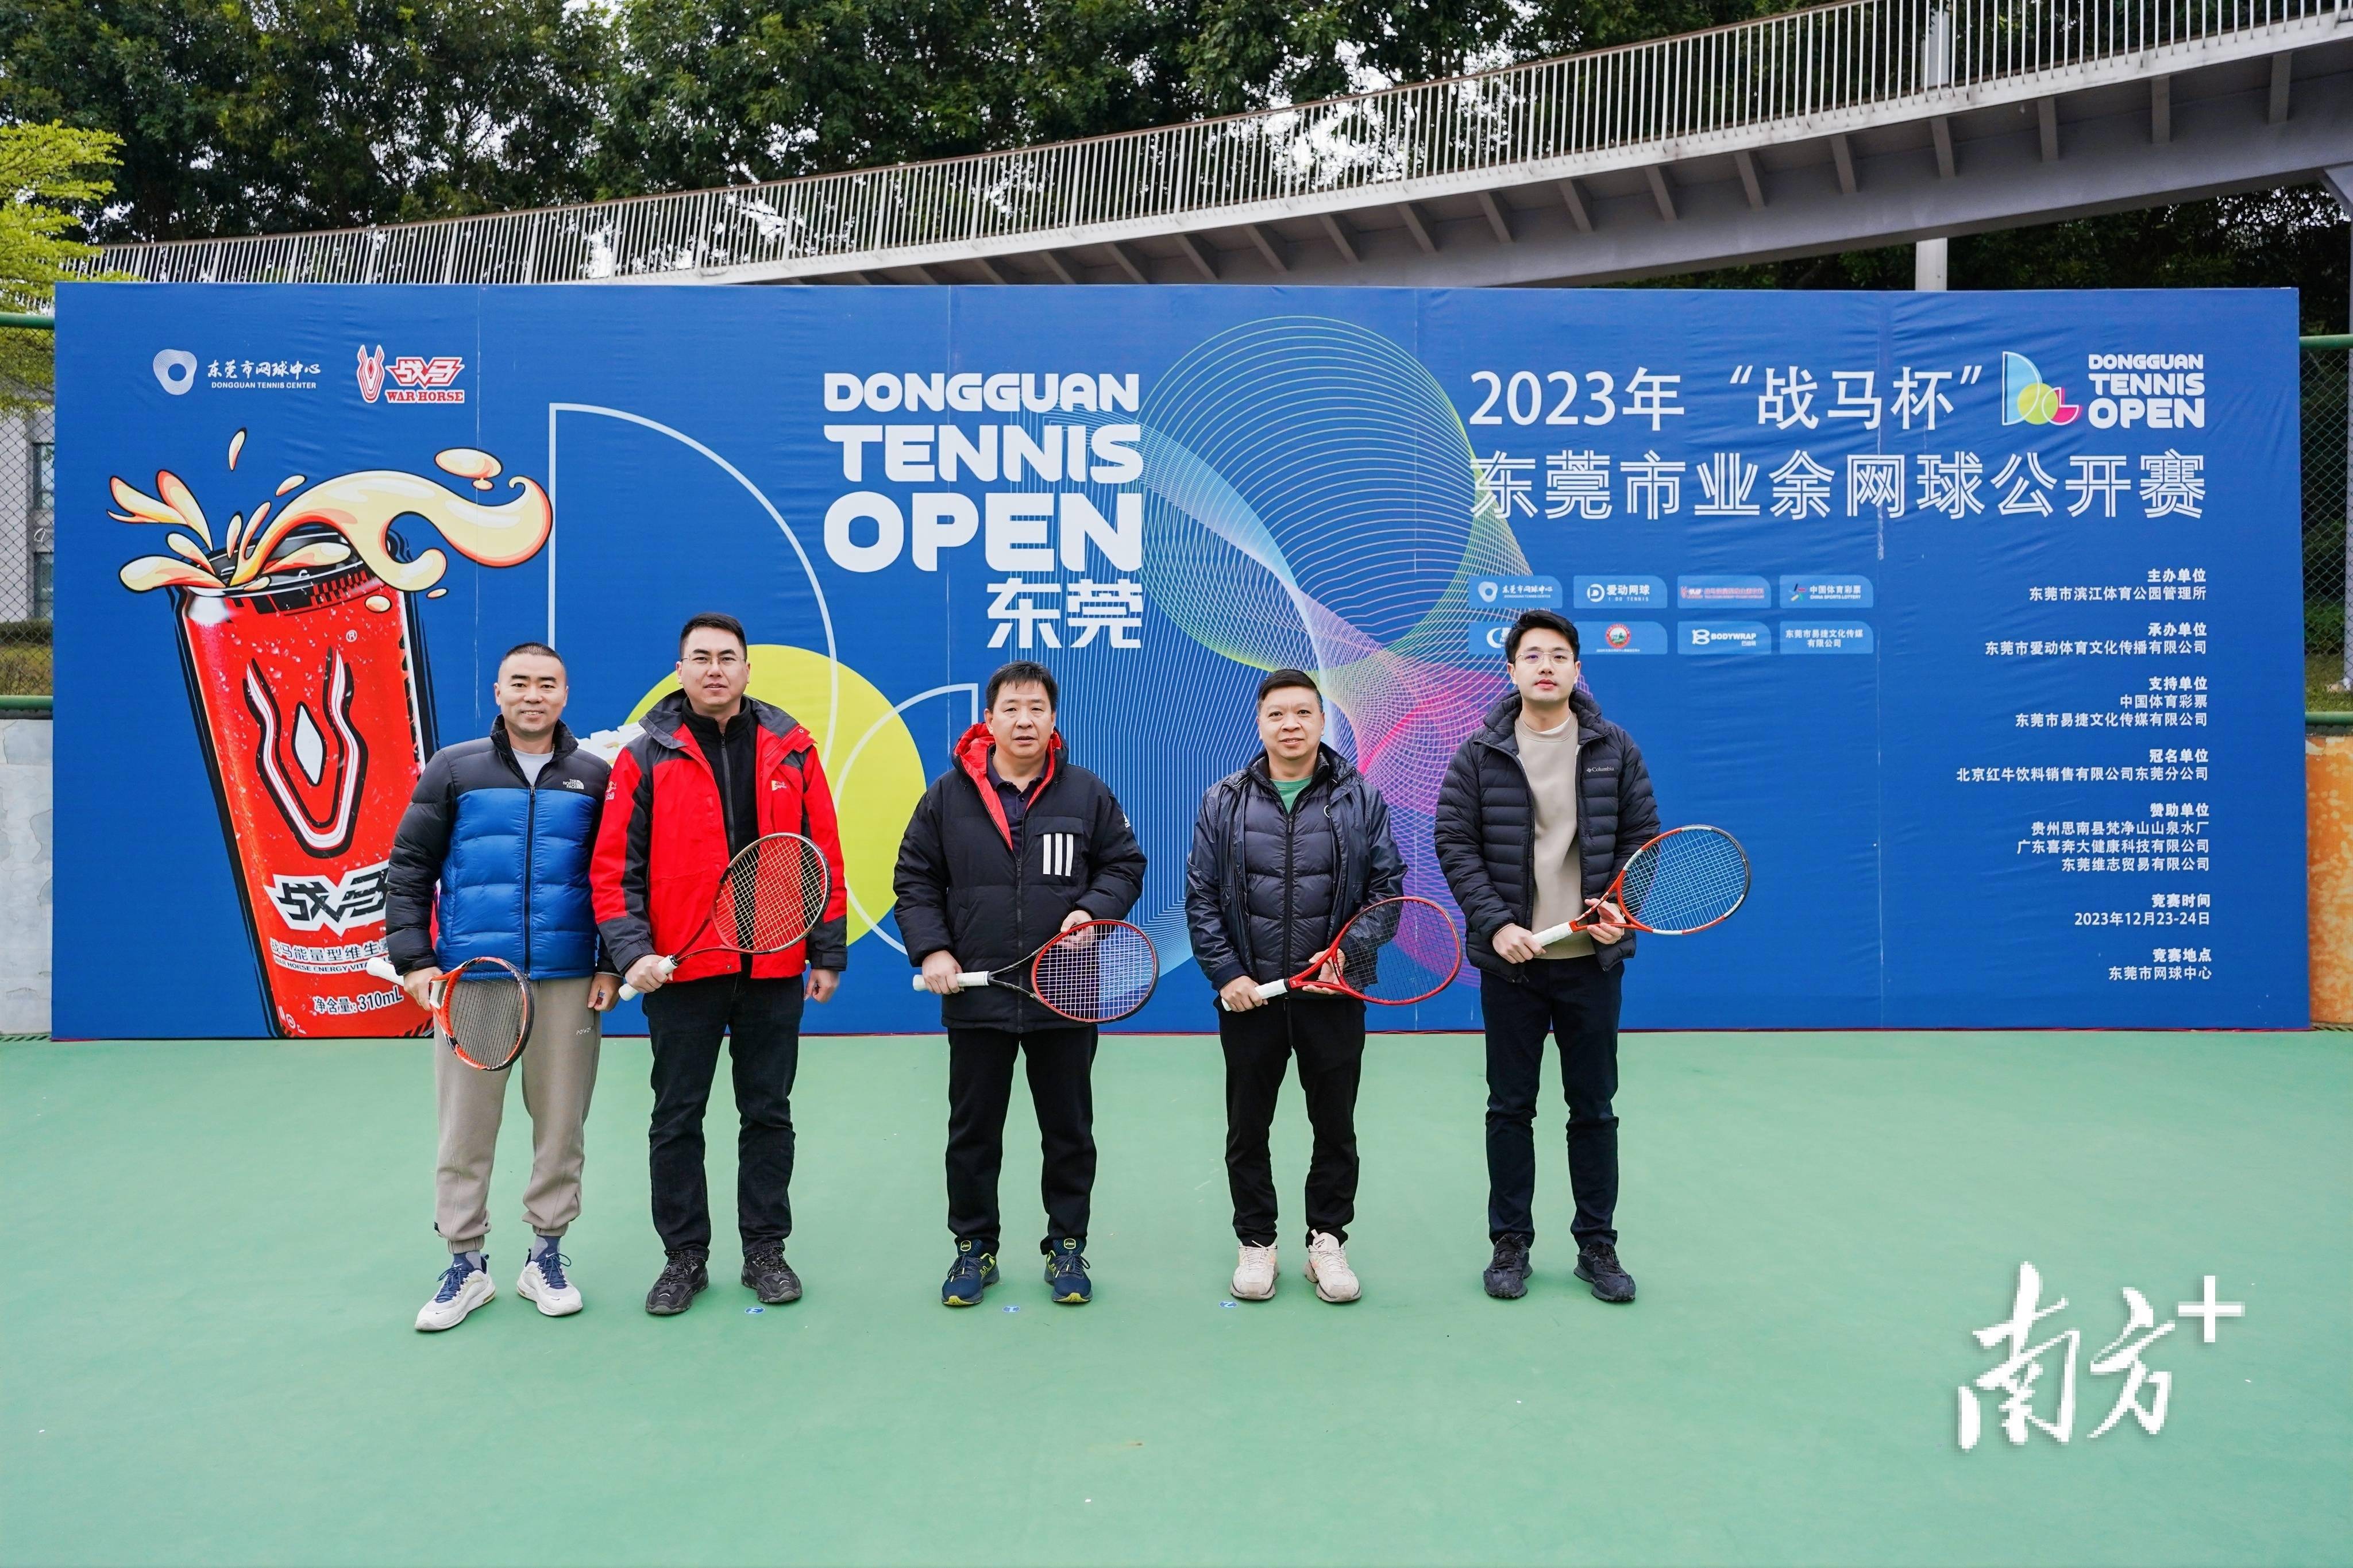 【168资讯】“战马杯”东莞市业余网球公开赛举行